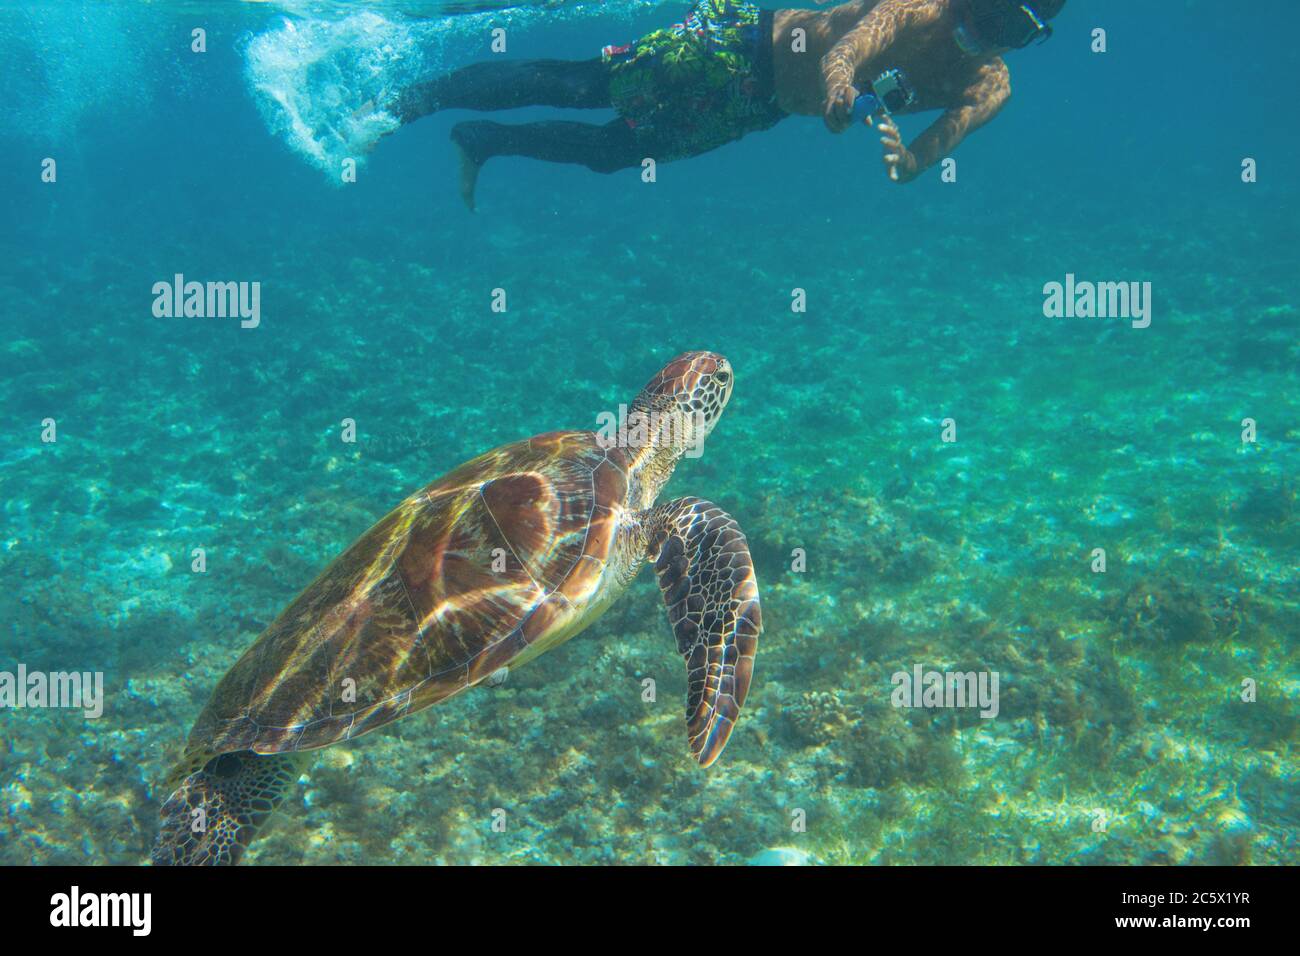 Meeresschildkröten und Touristen schwimmen im blauen Wasser. Schnorcheln mit Meeresschildkröten. Meeresschutzgebiet in tropischer Insellagune. Exotisches Tier in der Natur. Marie Tort Stockfoto